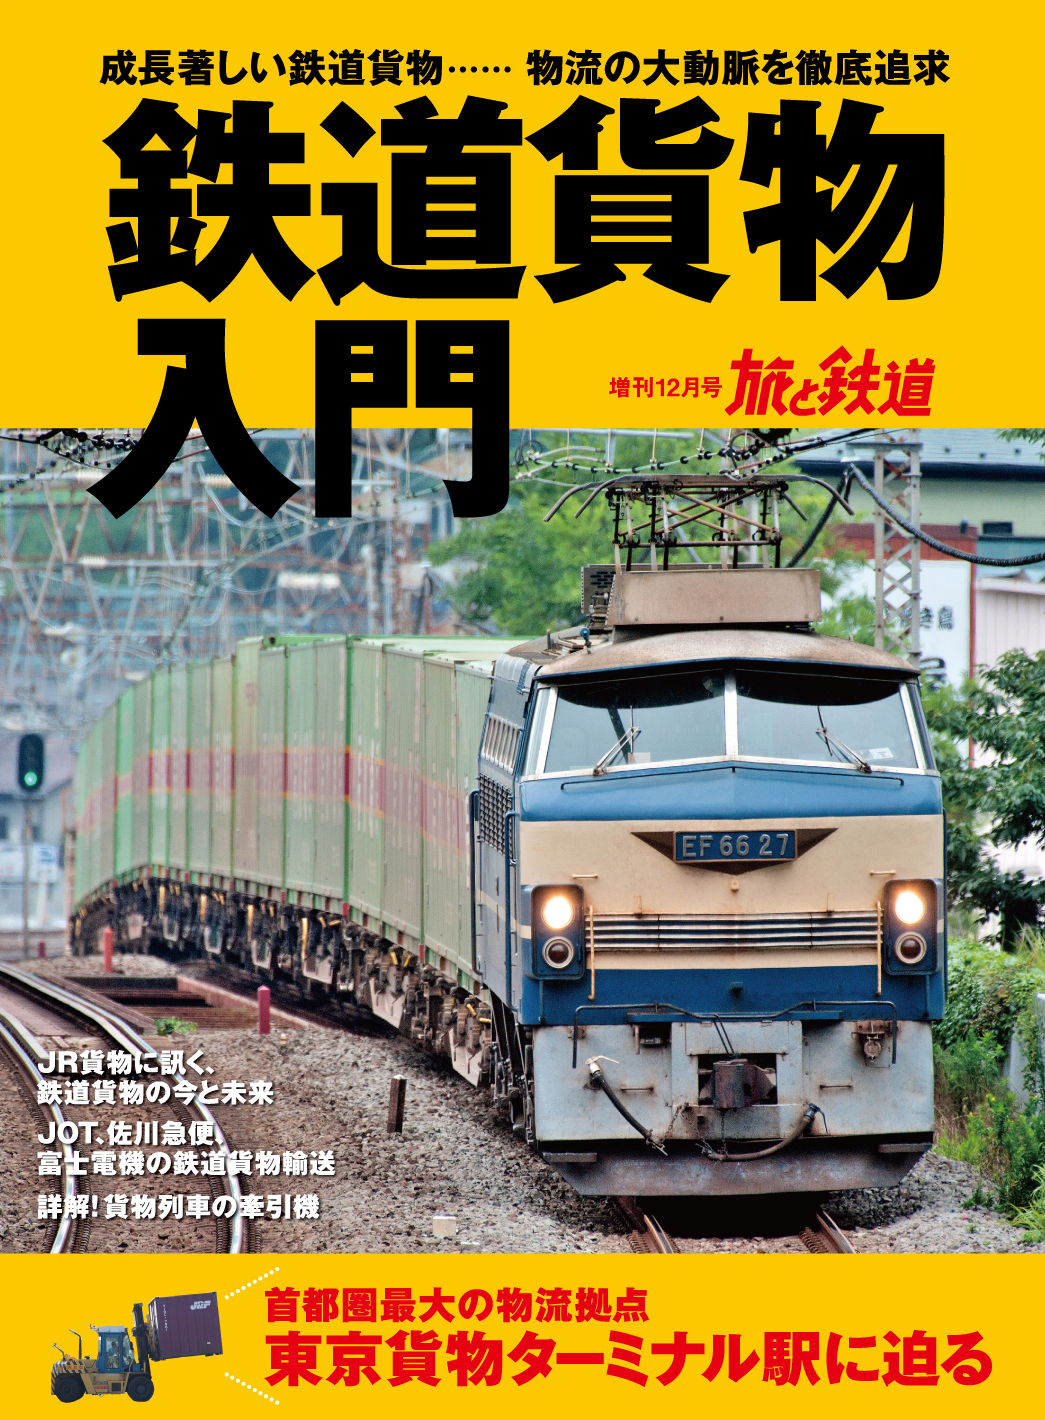 旅と鉄道 19年増刊12月号 鉄道貨物入門 を発売 鉄道のもう一つの顔 貨物列車 を硬軟織り交ぜて多角的に取り上げます 株式会社インプレスホールディングスのプレスリリース